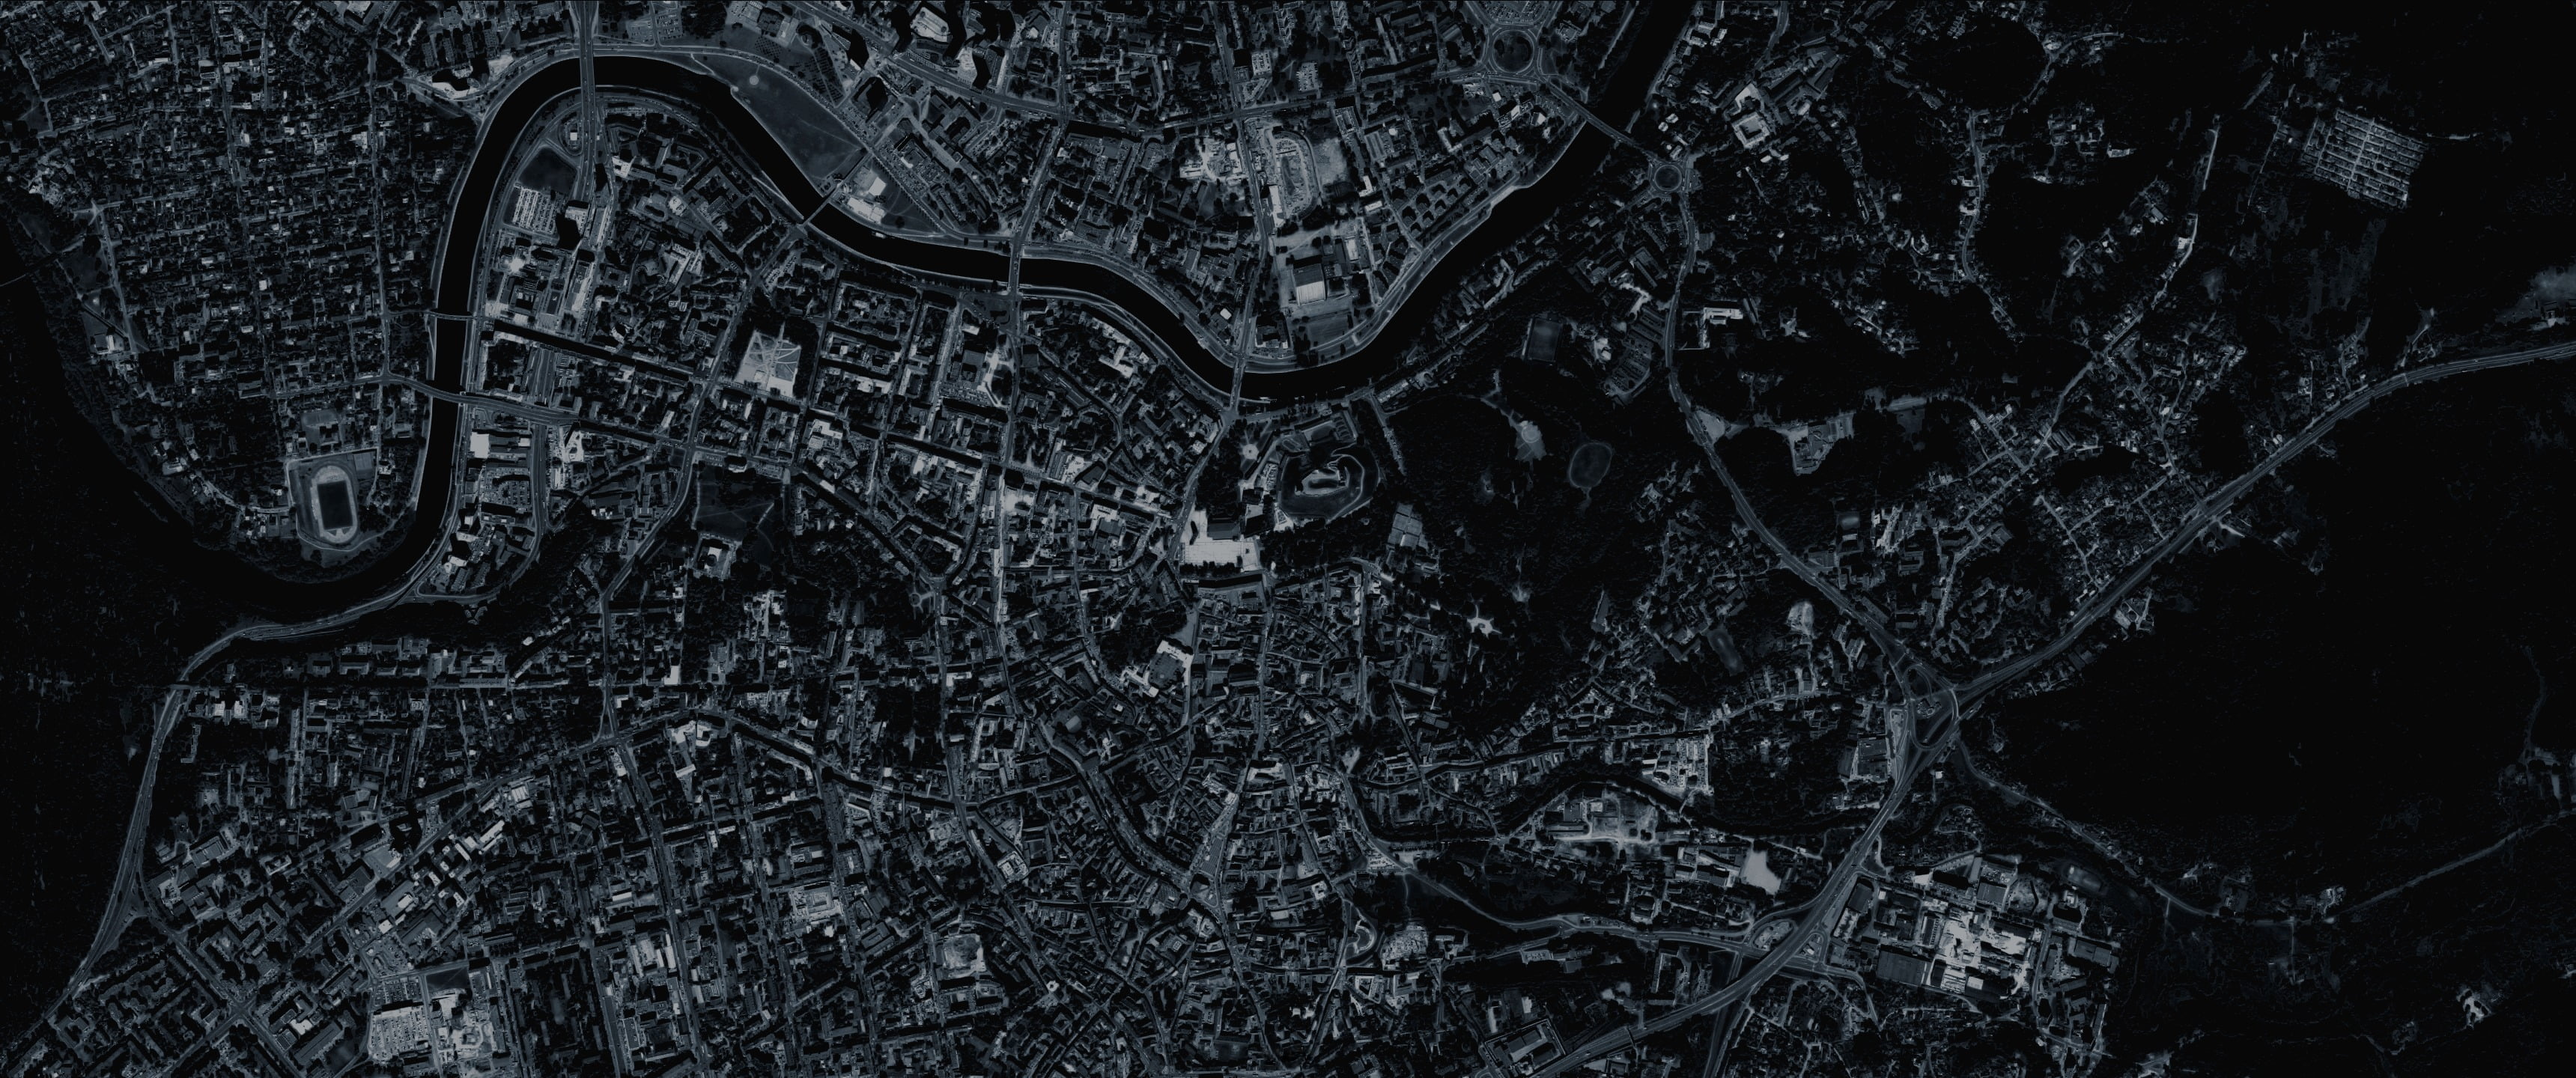 building photo, dark, city, blue, Vilnius, aerial view, Lithuania